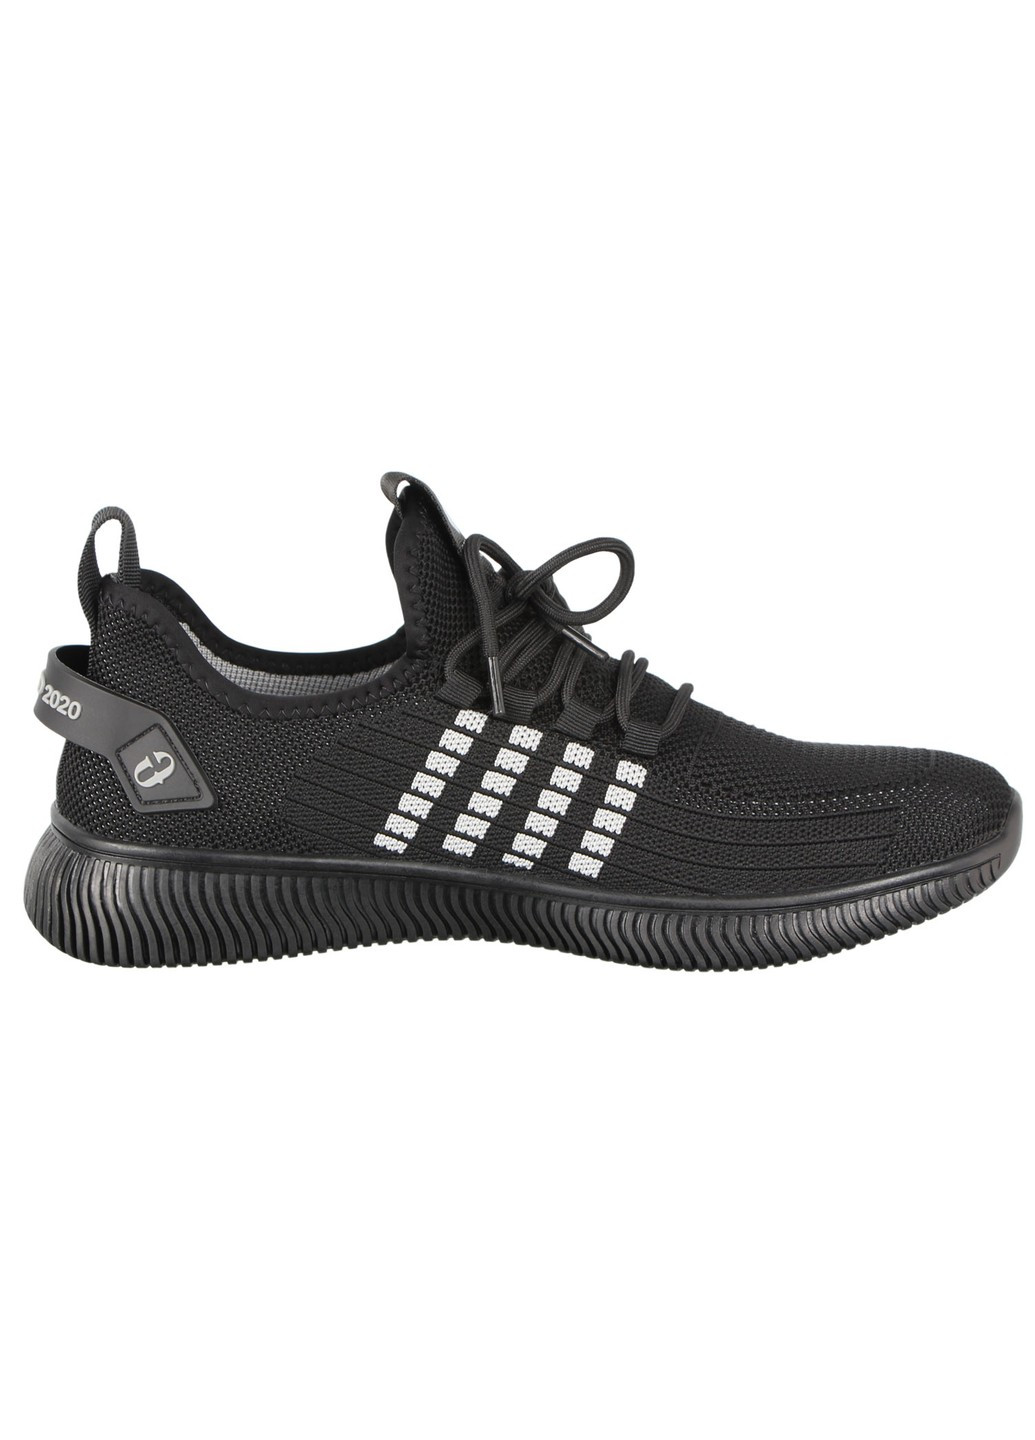 Черные демисезонные мужские кроссовки 197003 Lifexpert